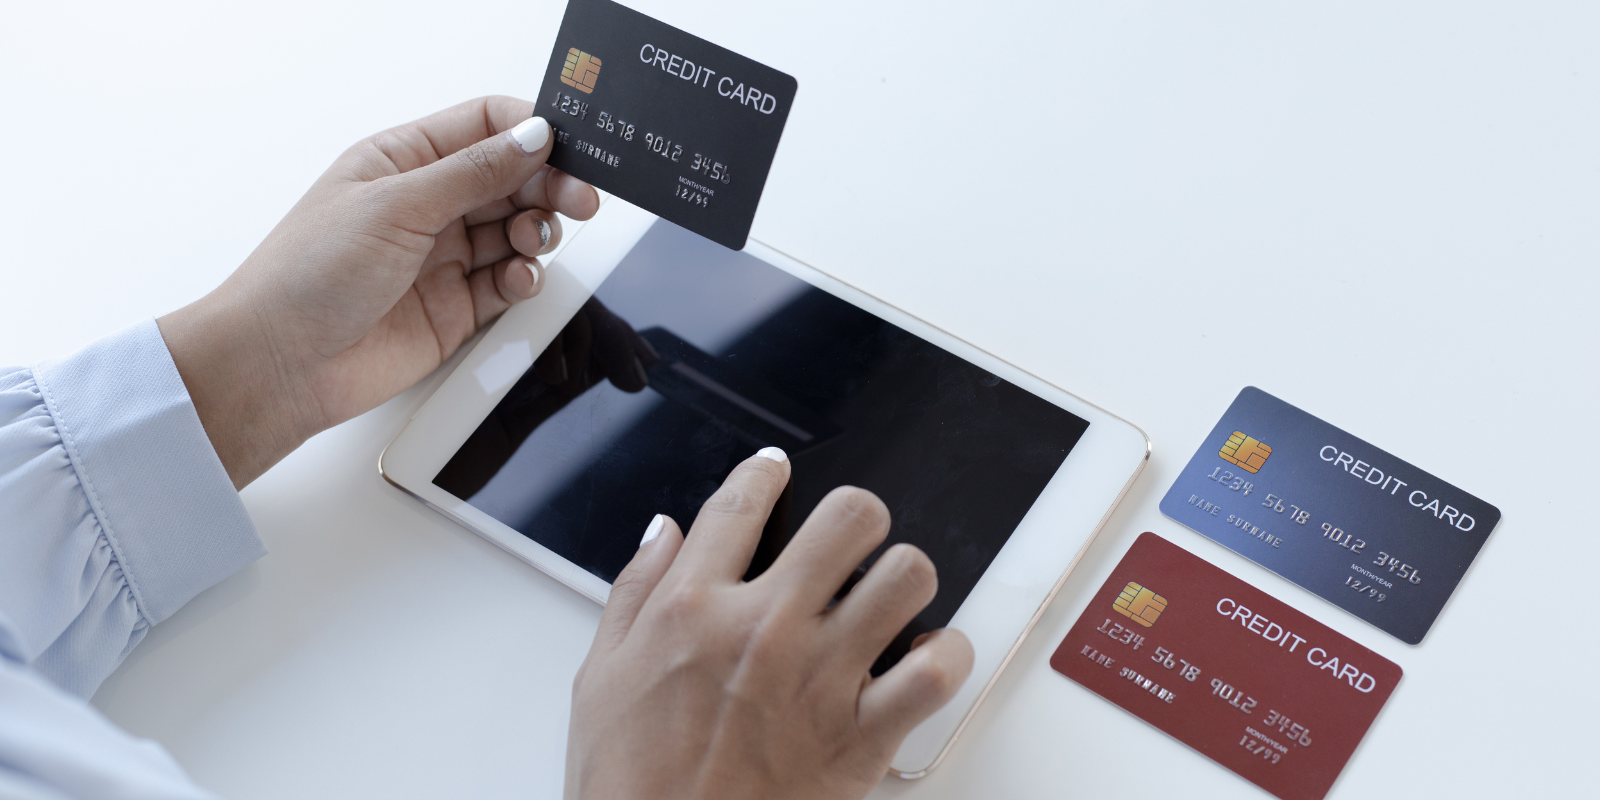 sites de apostas que aceitam cartão de crédito